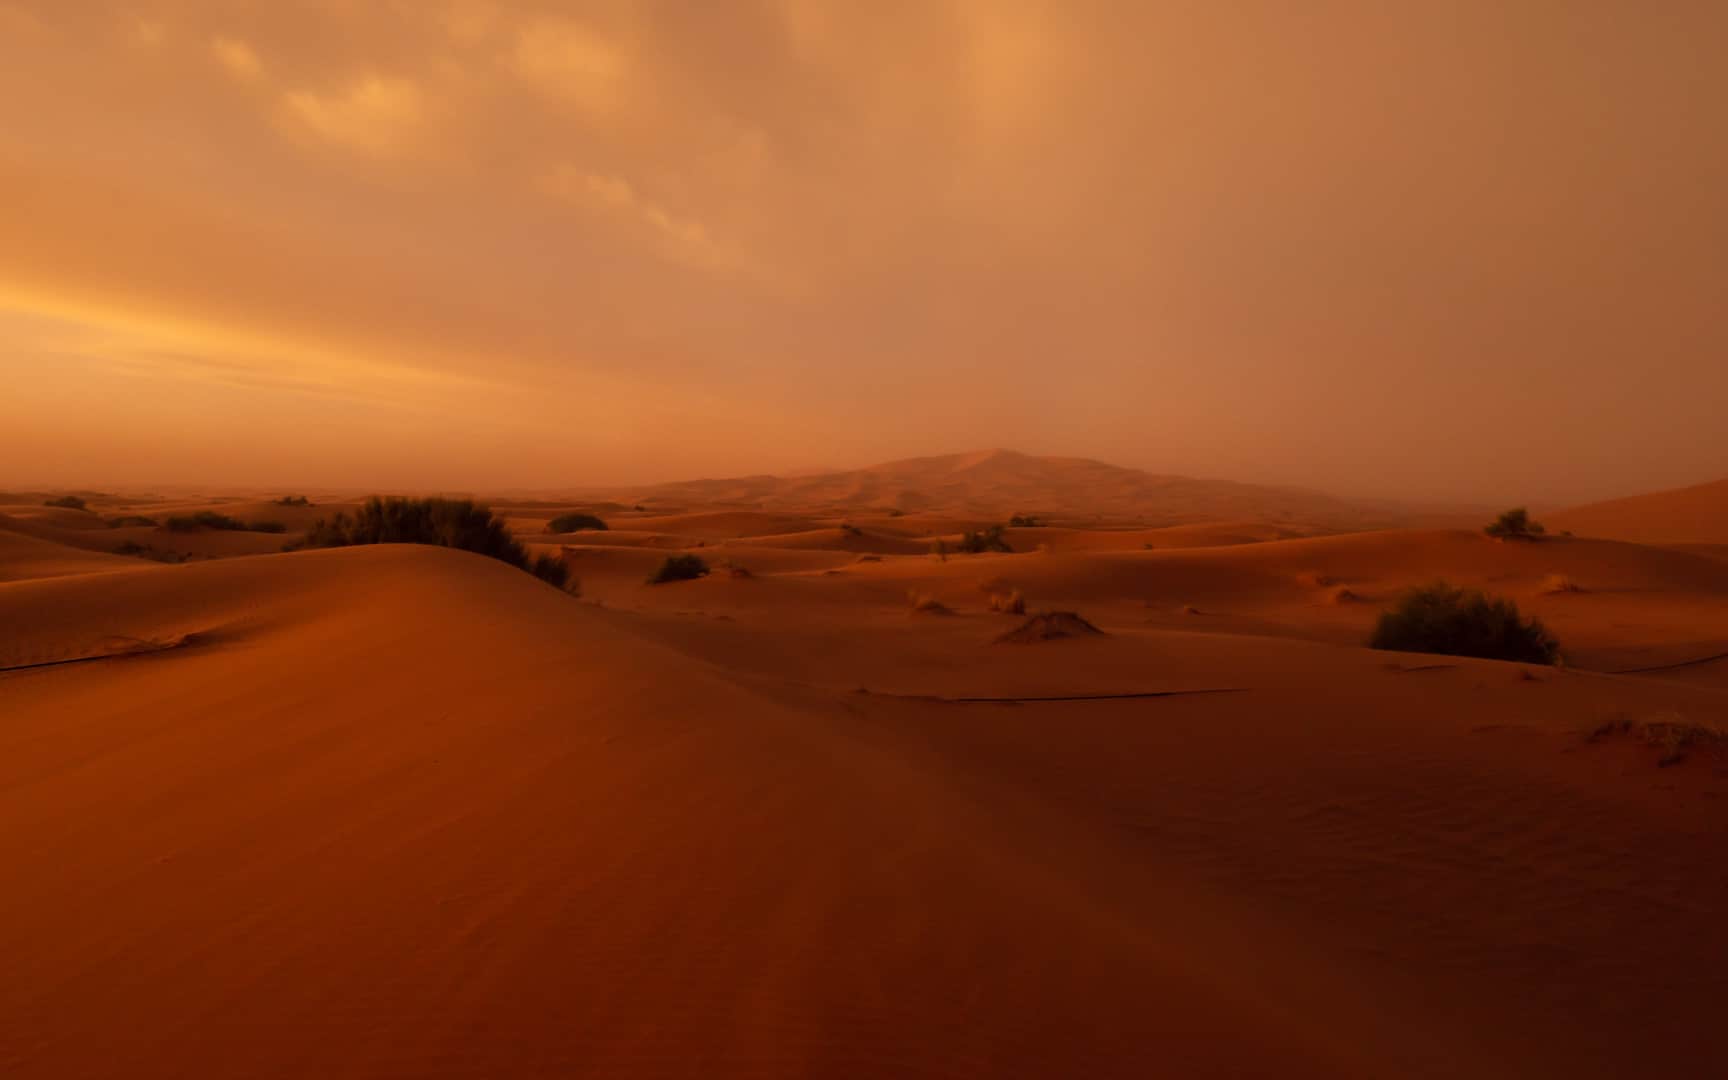 Morocco-xaluca-review-sahara-desert-sunrise-landscape